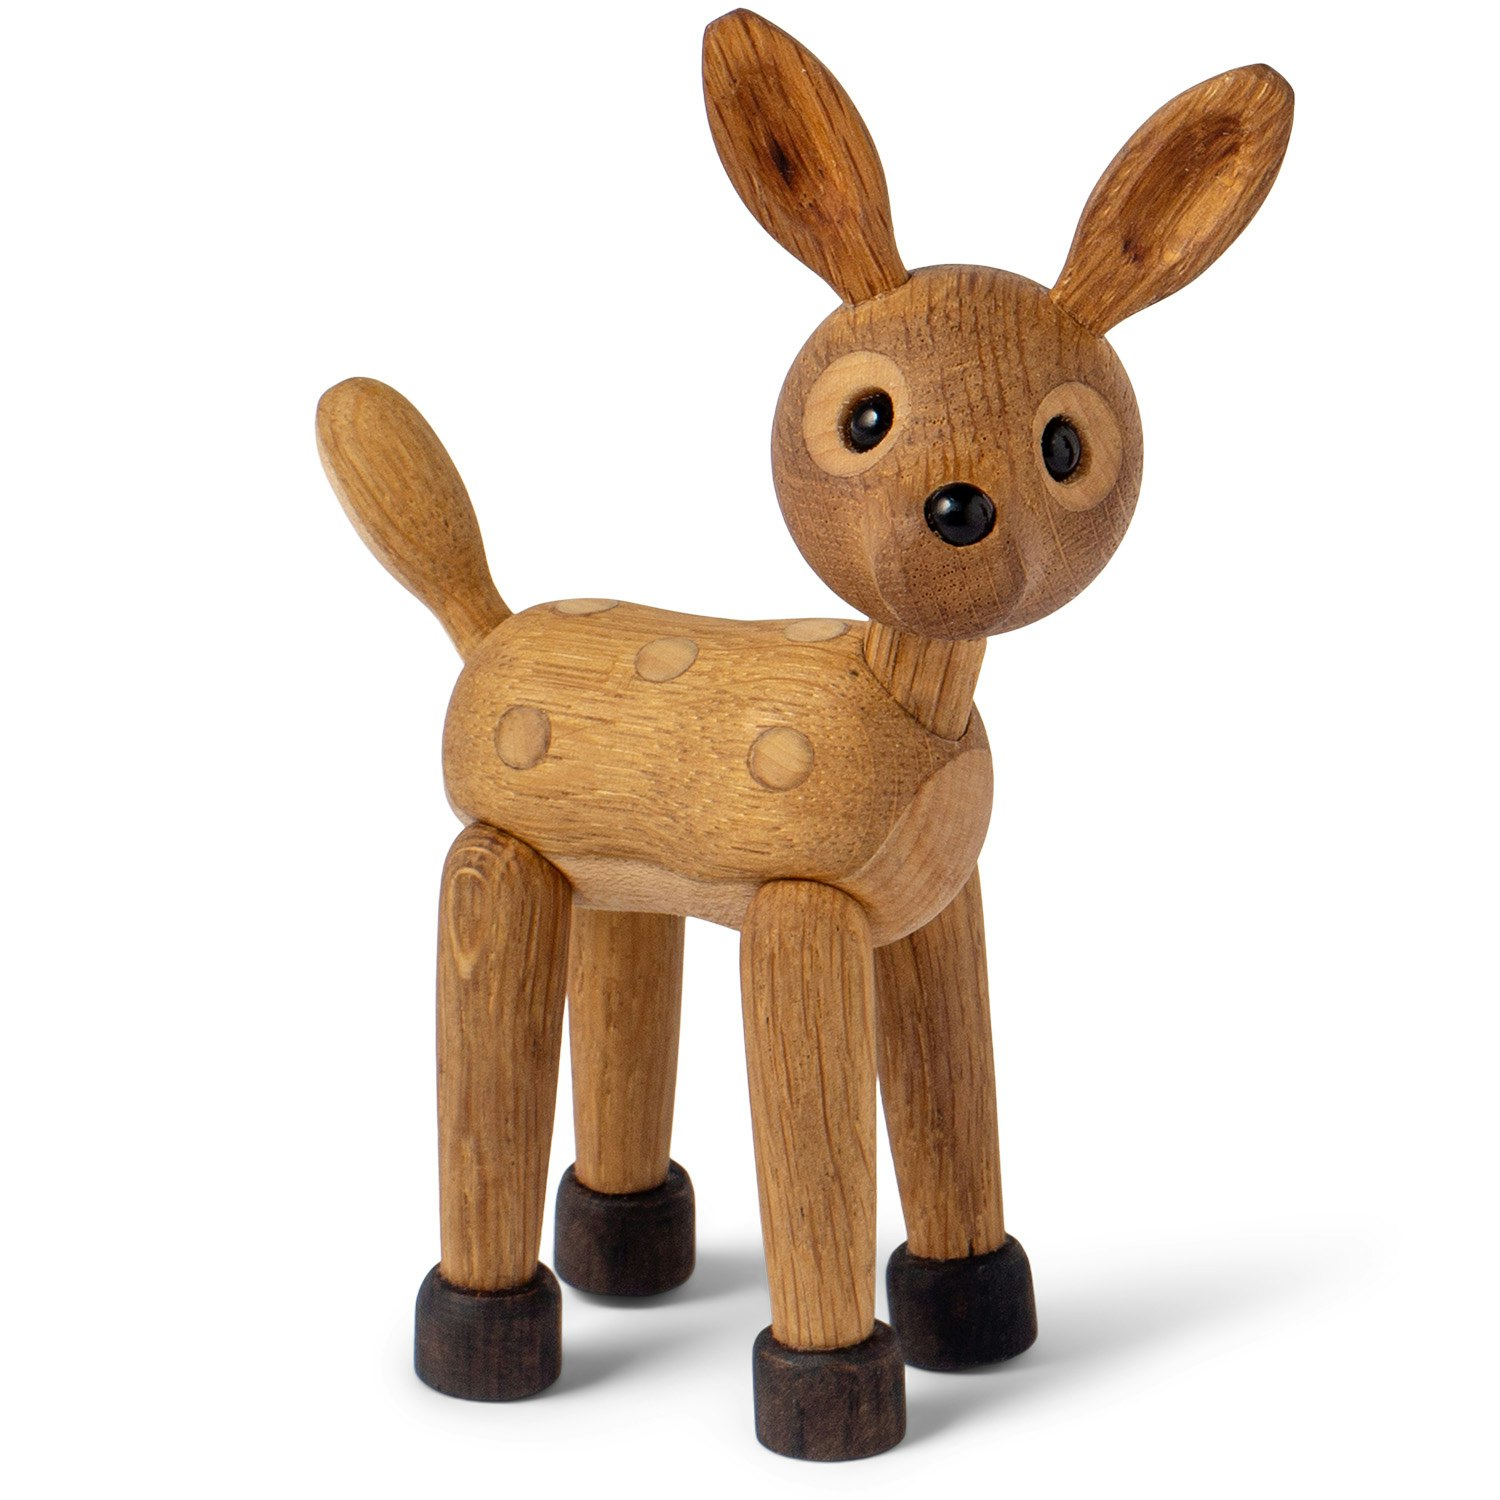 Spot Deer Baby Wooden Figurine 12,7 cm - Spring Copenhagen @ RoyalDesign .co.uk